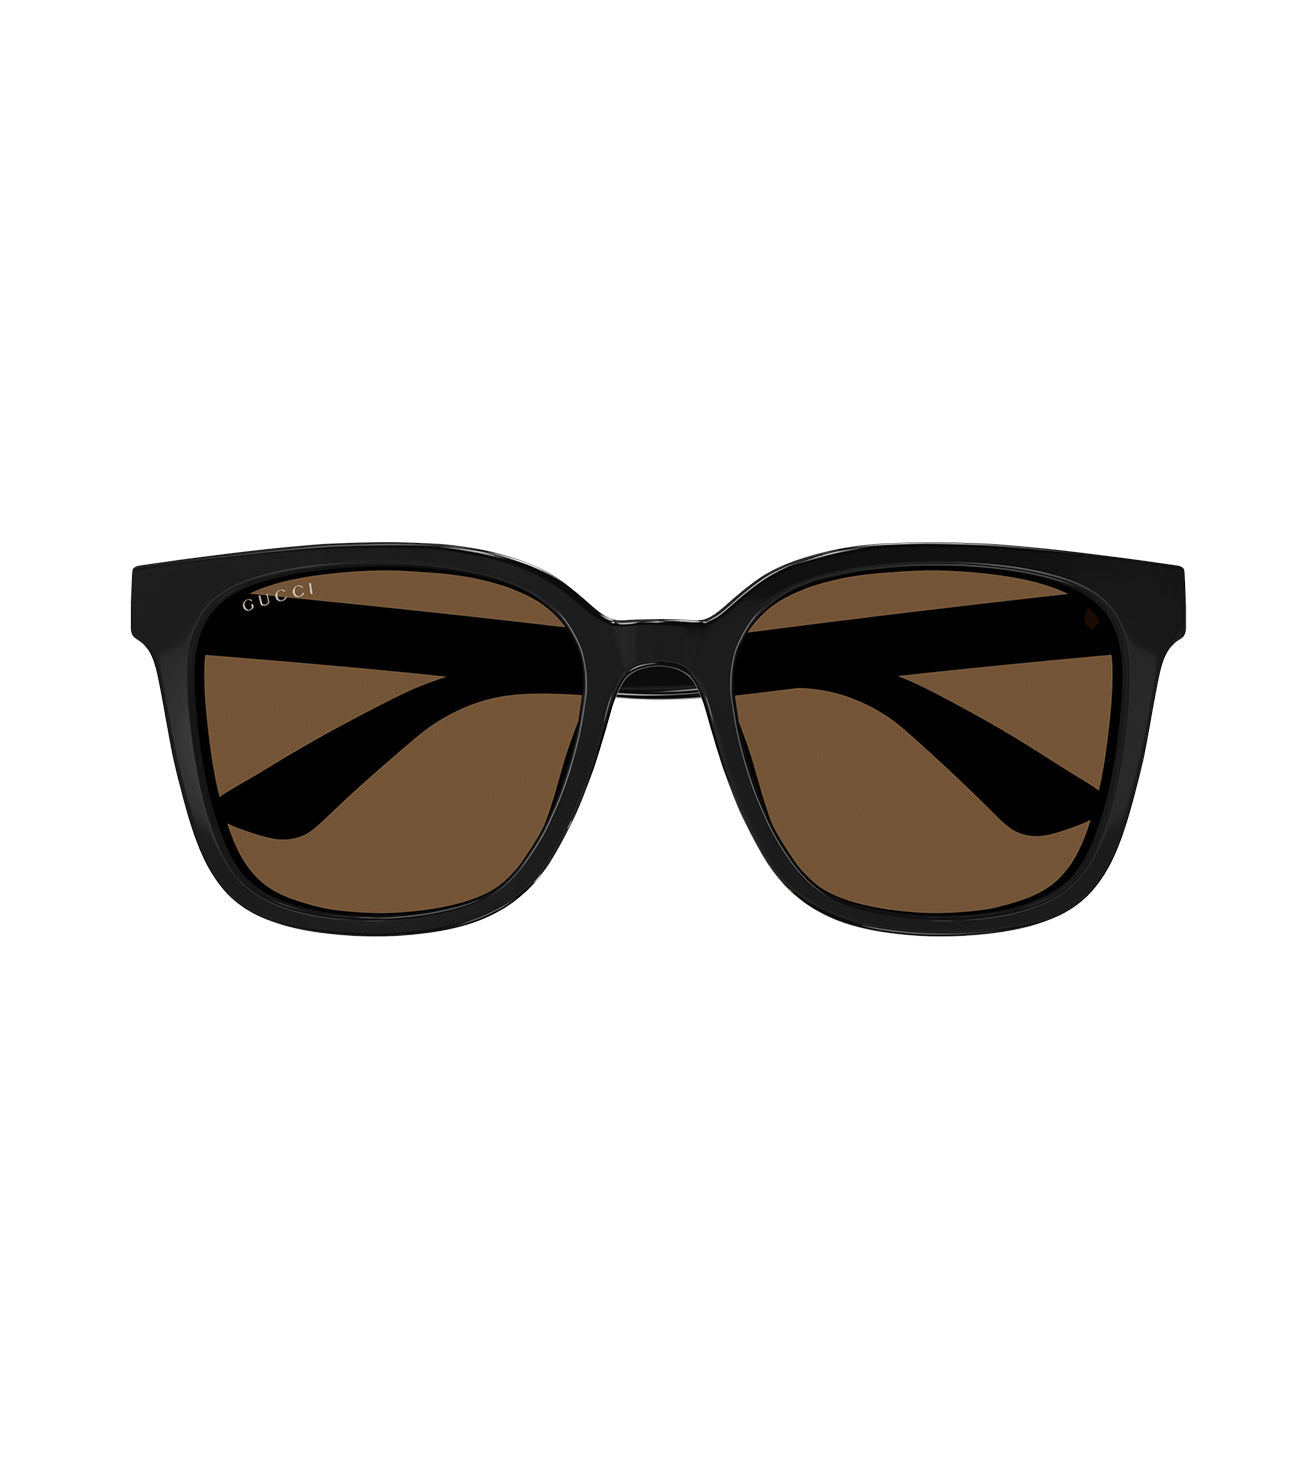 Gucci Men's Brown Round Sunglasses